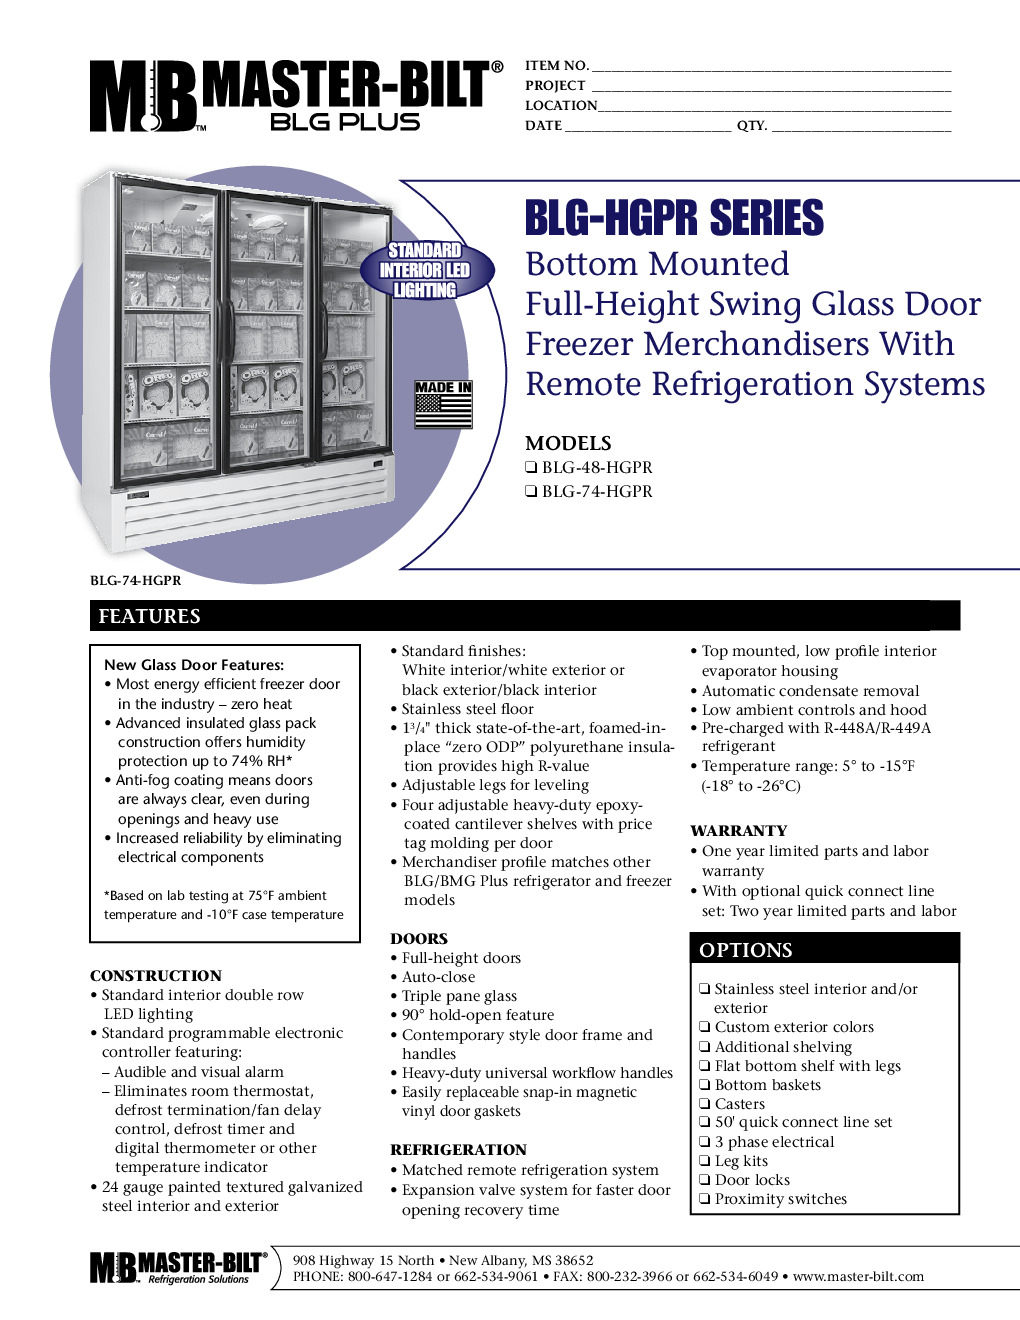 Master-Bilt BLG-74-HGPR Merchandiser Freezer